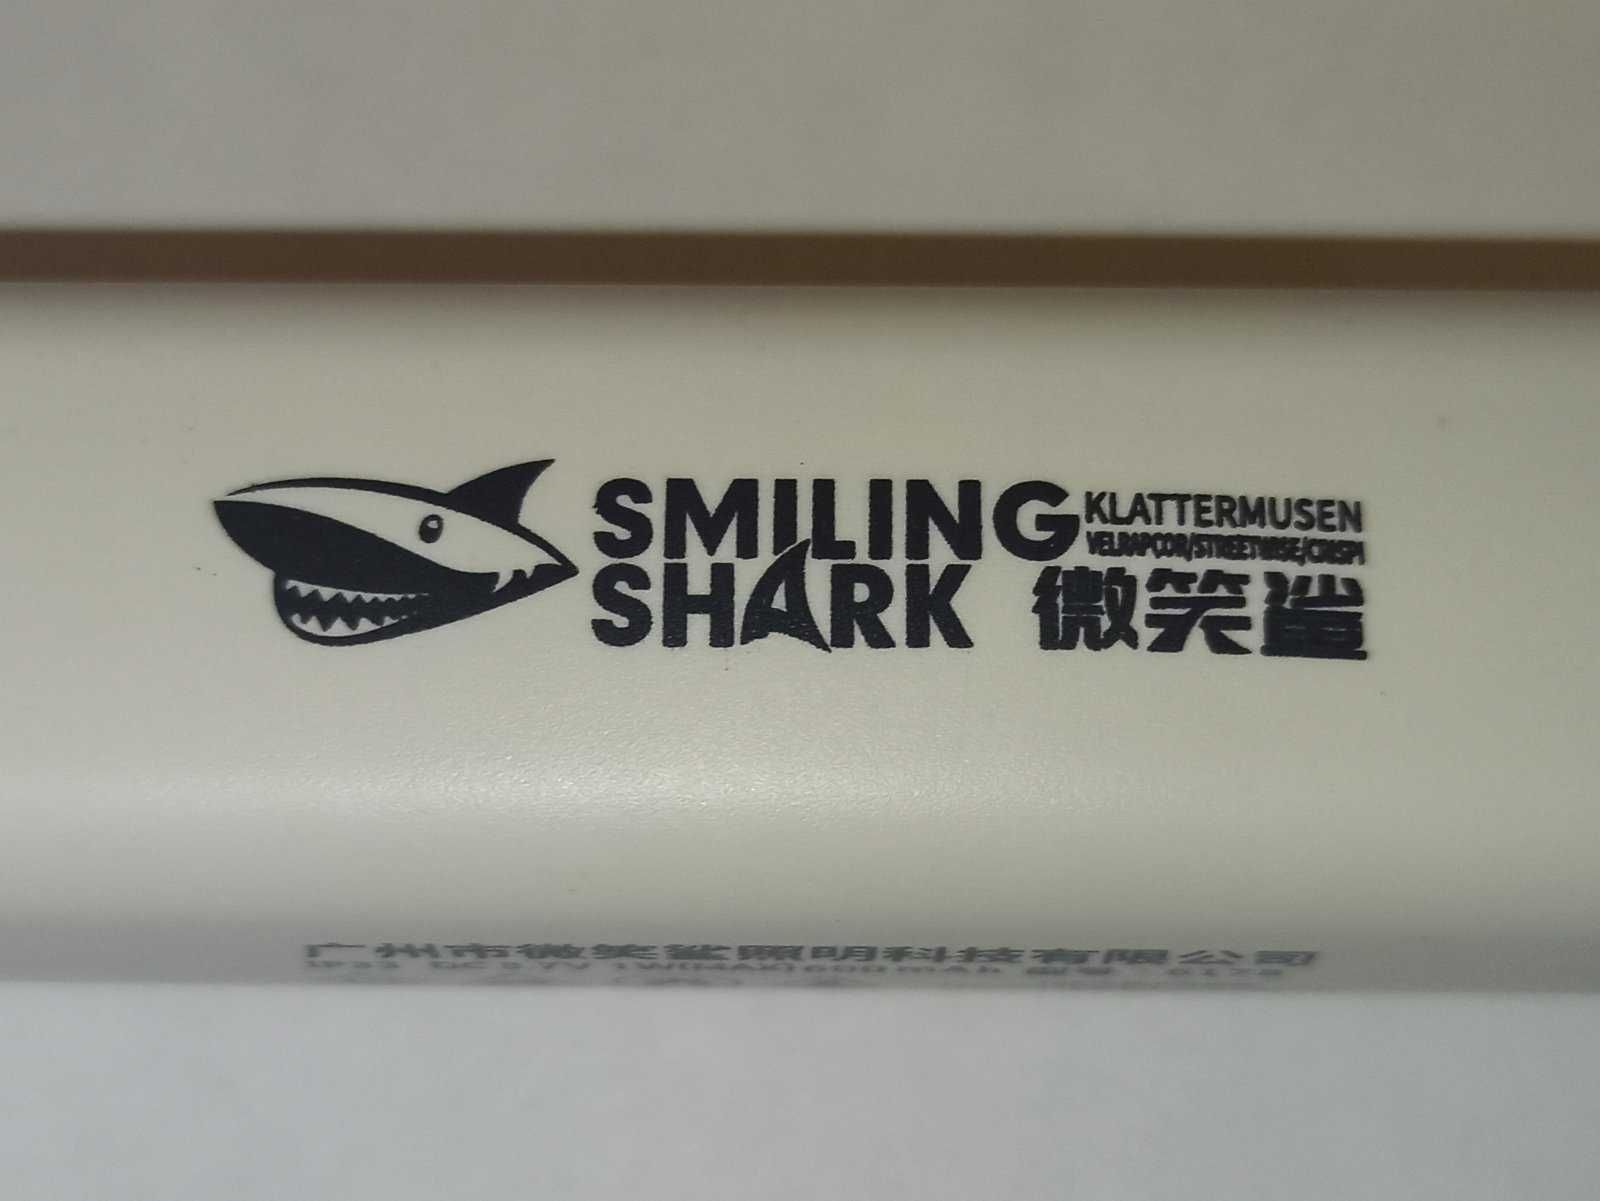 Очень яркий аккумуляторный светодиодный LED фонарь Smiling Shark